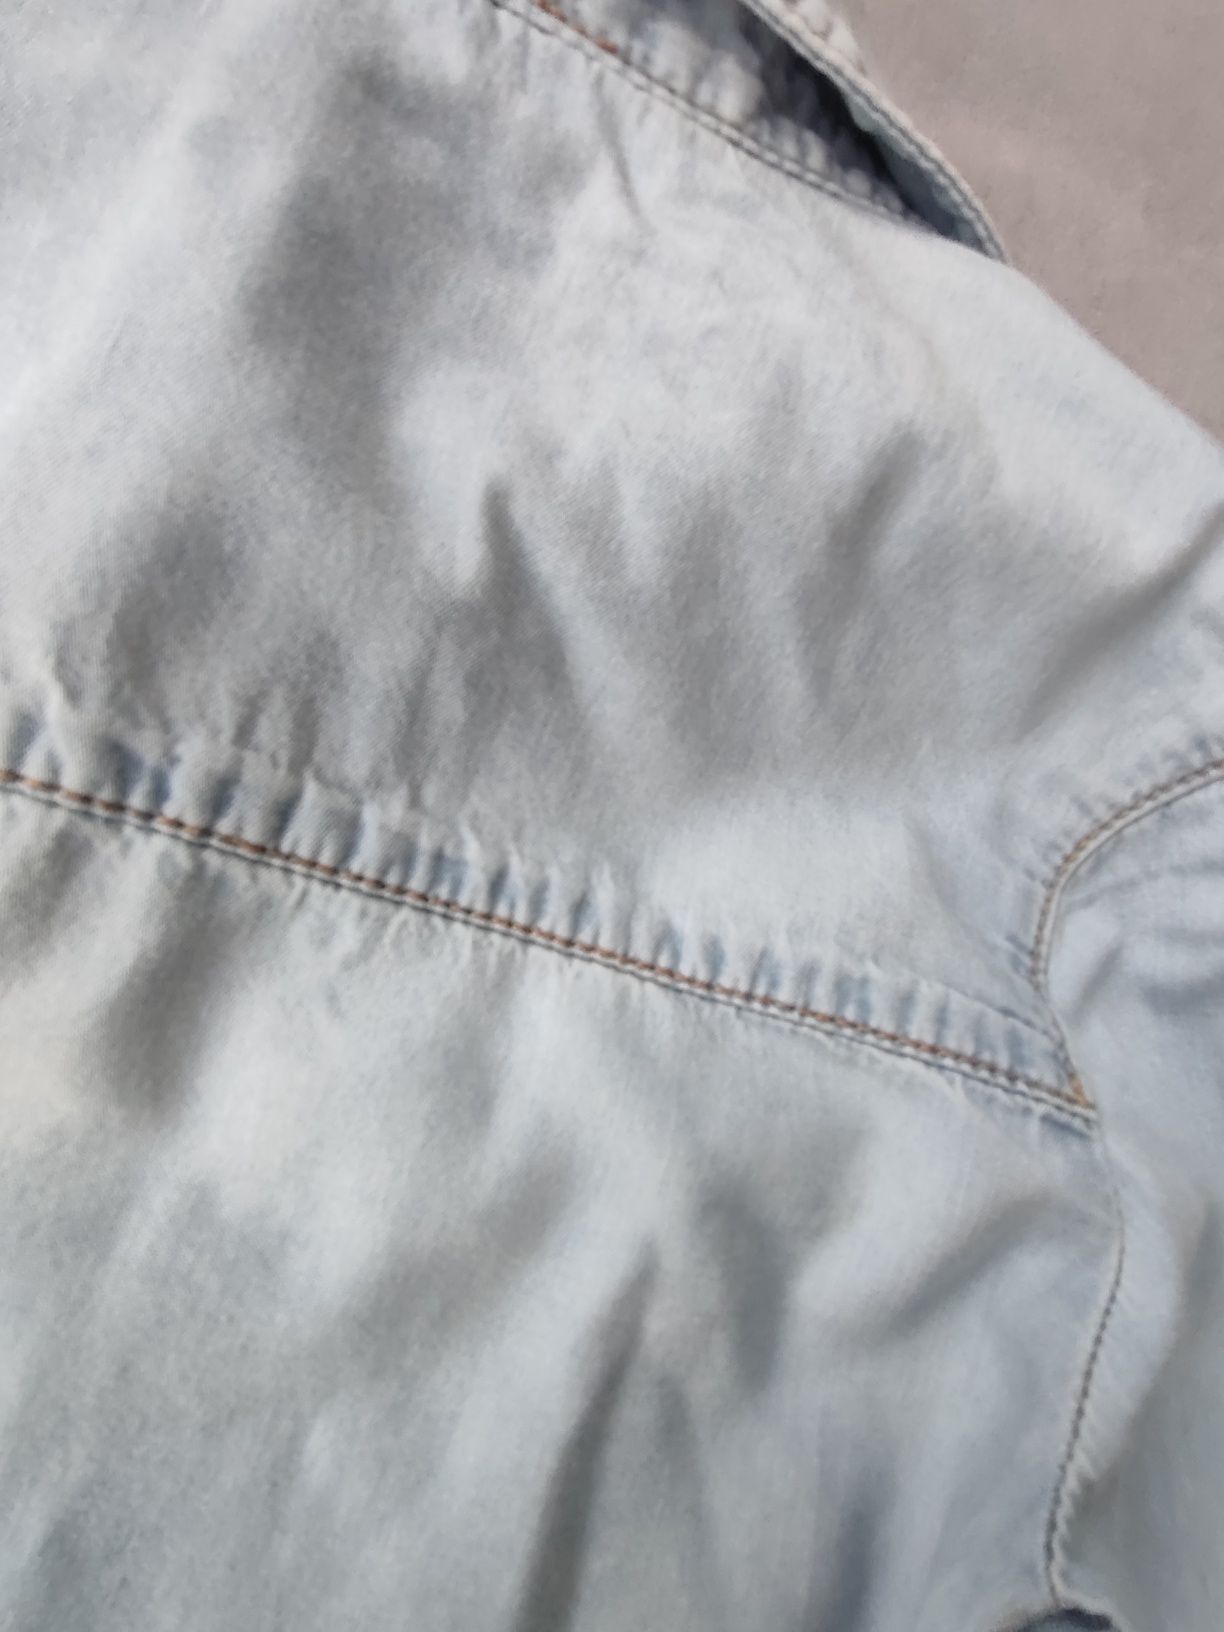 Jeansowa jasnoniebieska rozpinana koszula z długim rękawem 128 Zara